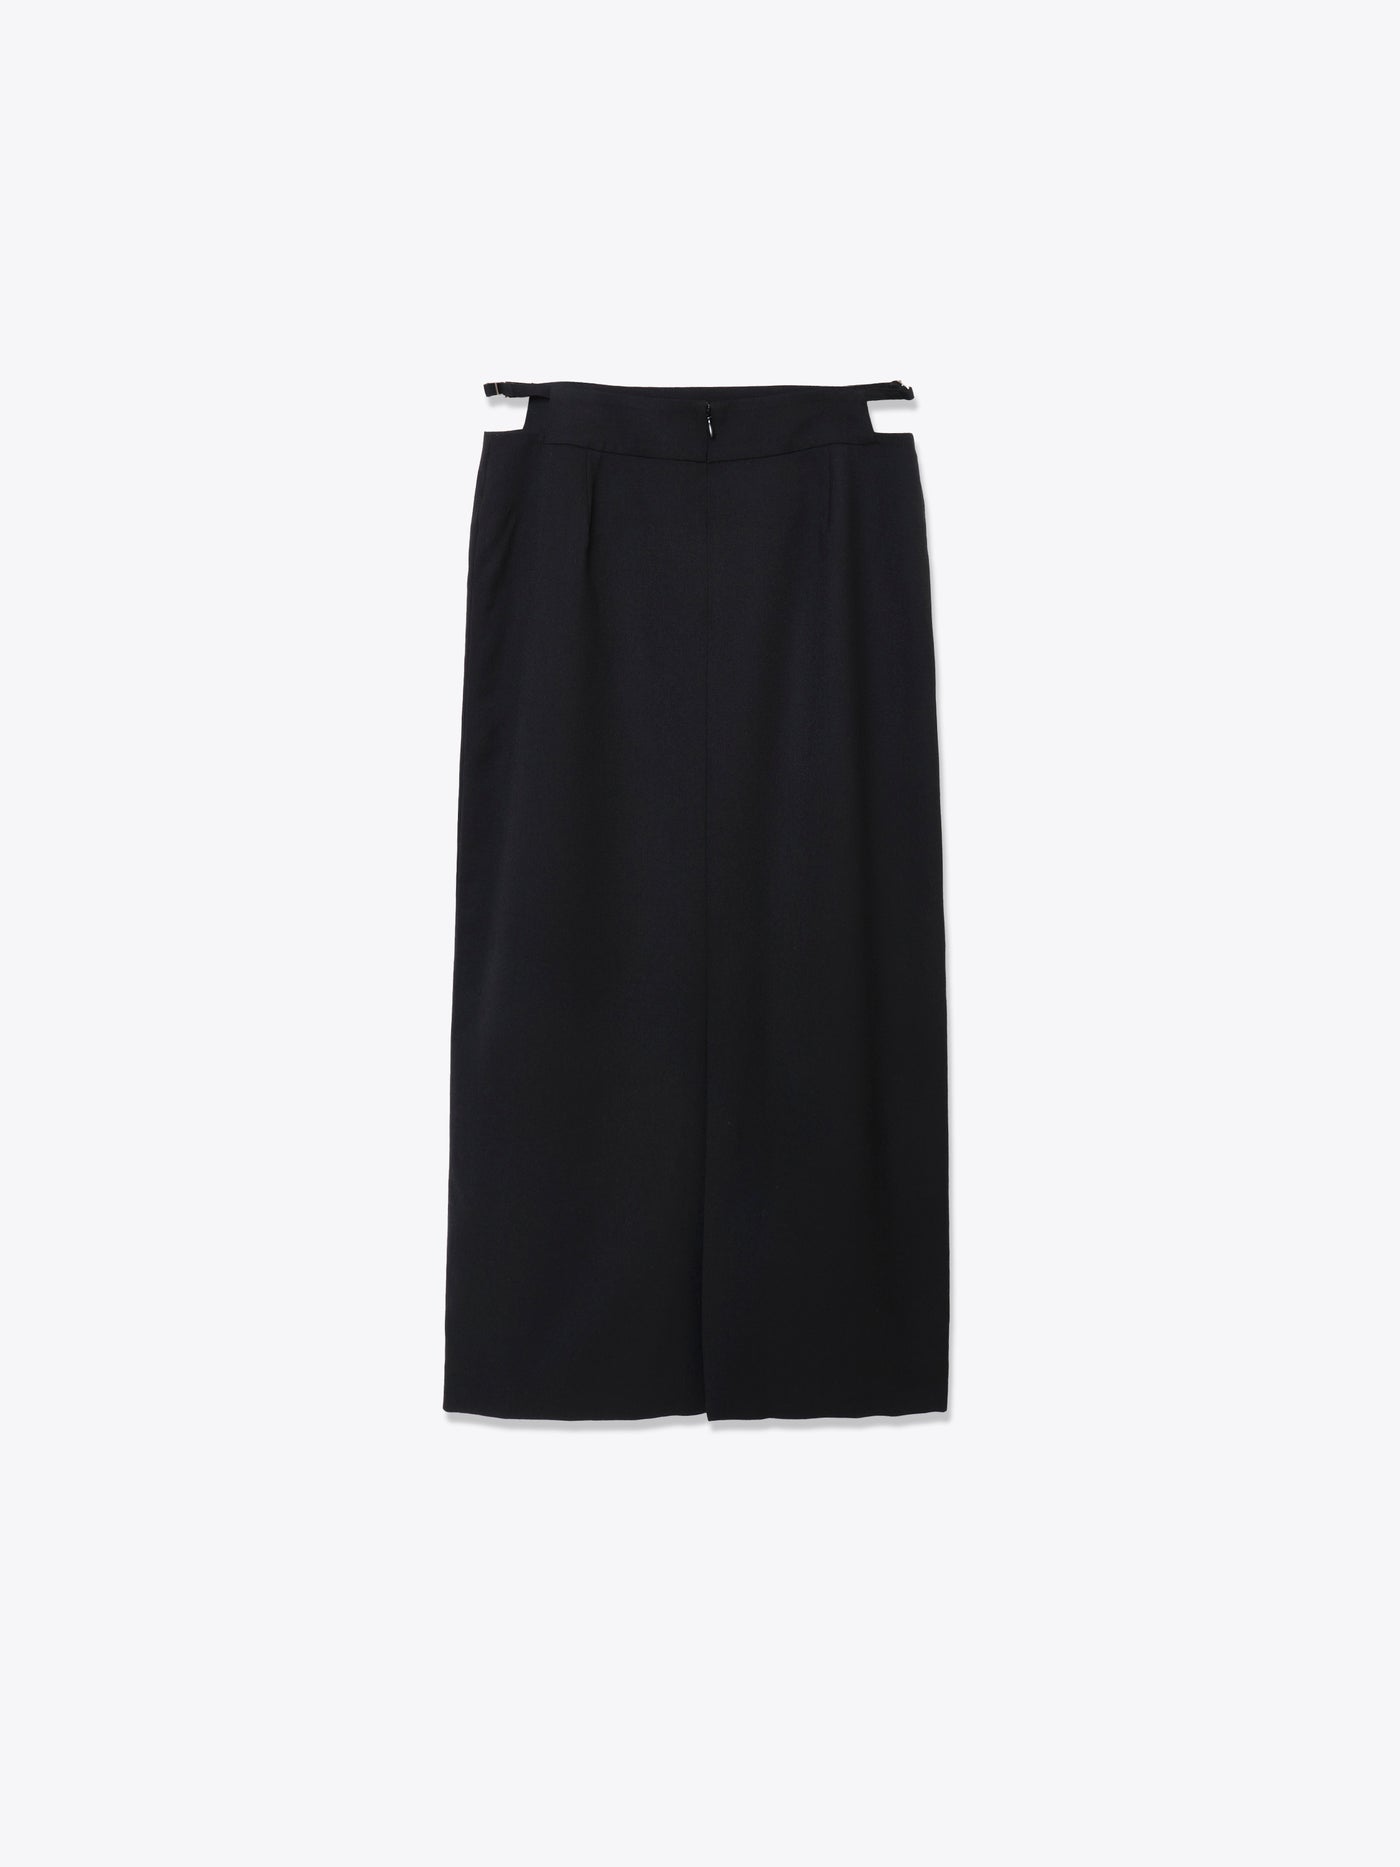 Accent skirt